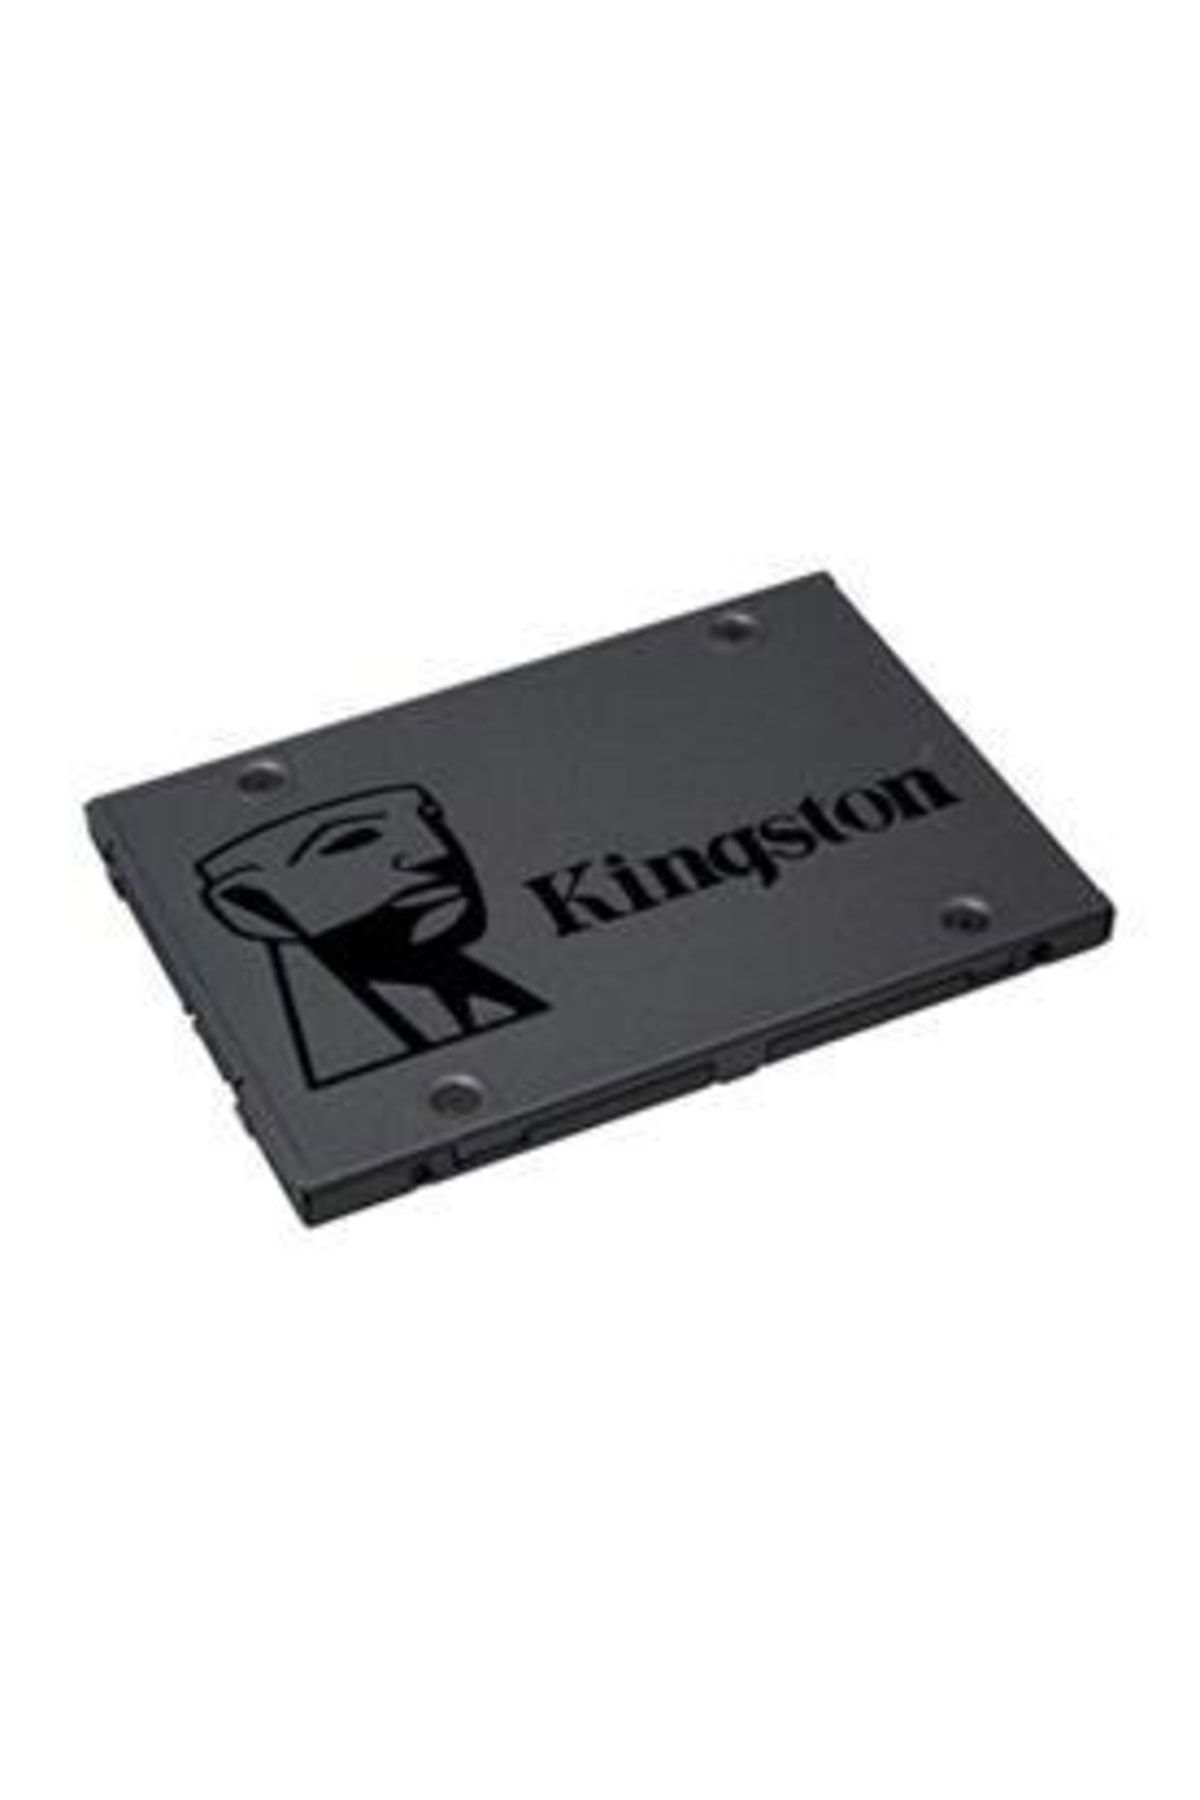 Kingston A400 480 Gb 2.5" Sata3 Ssd 500/450 (sa400s37/480g)